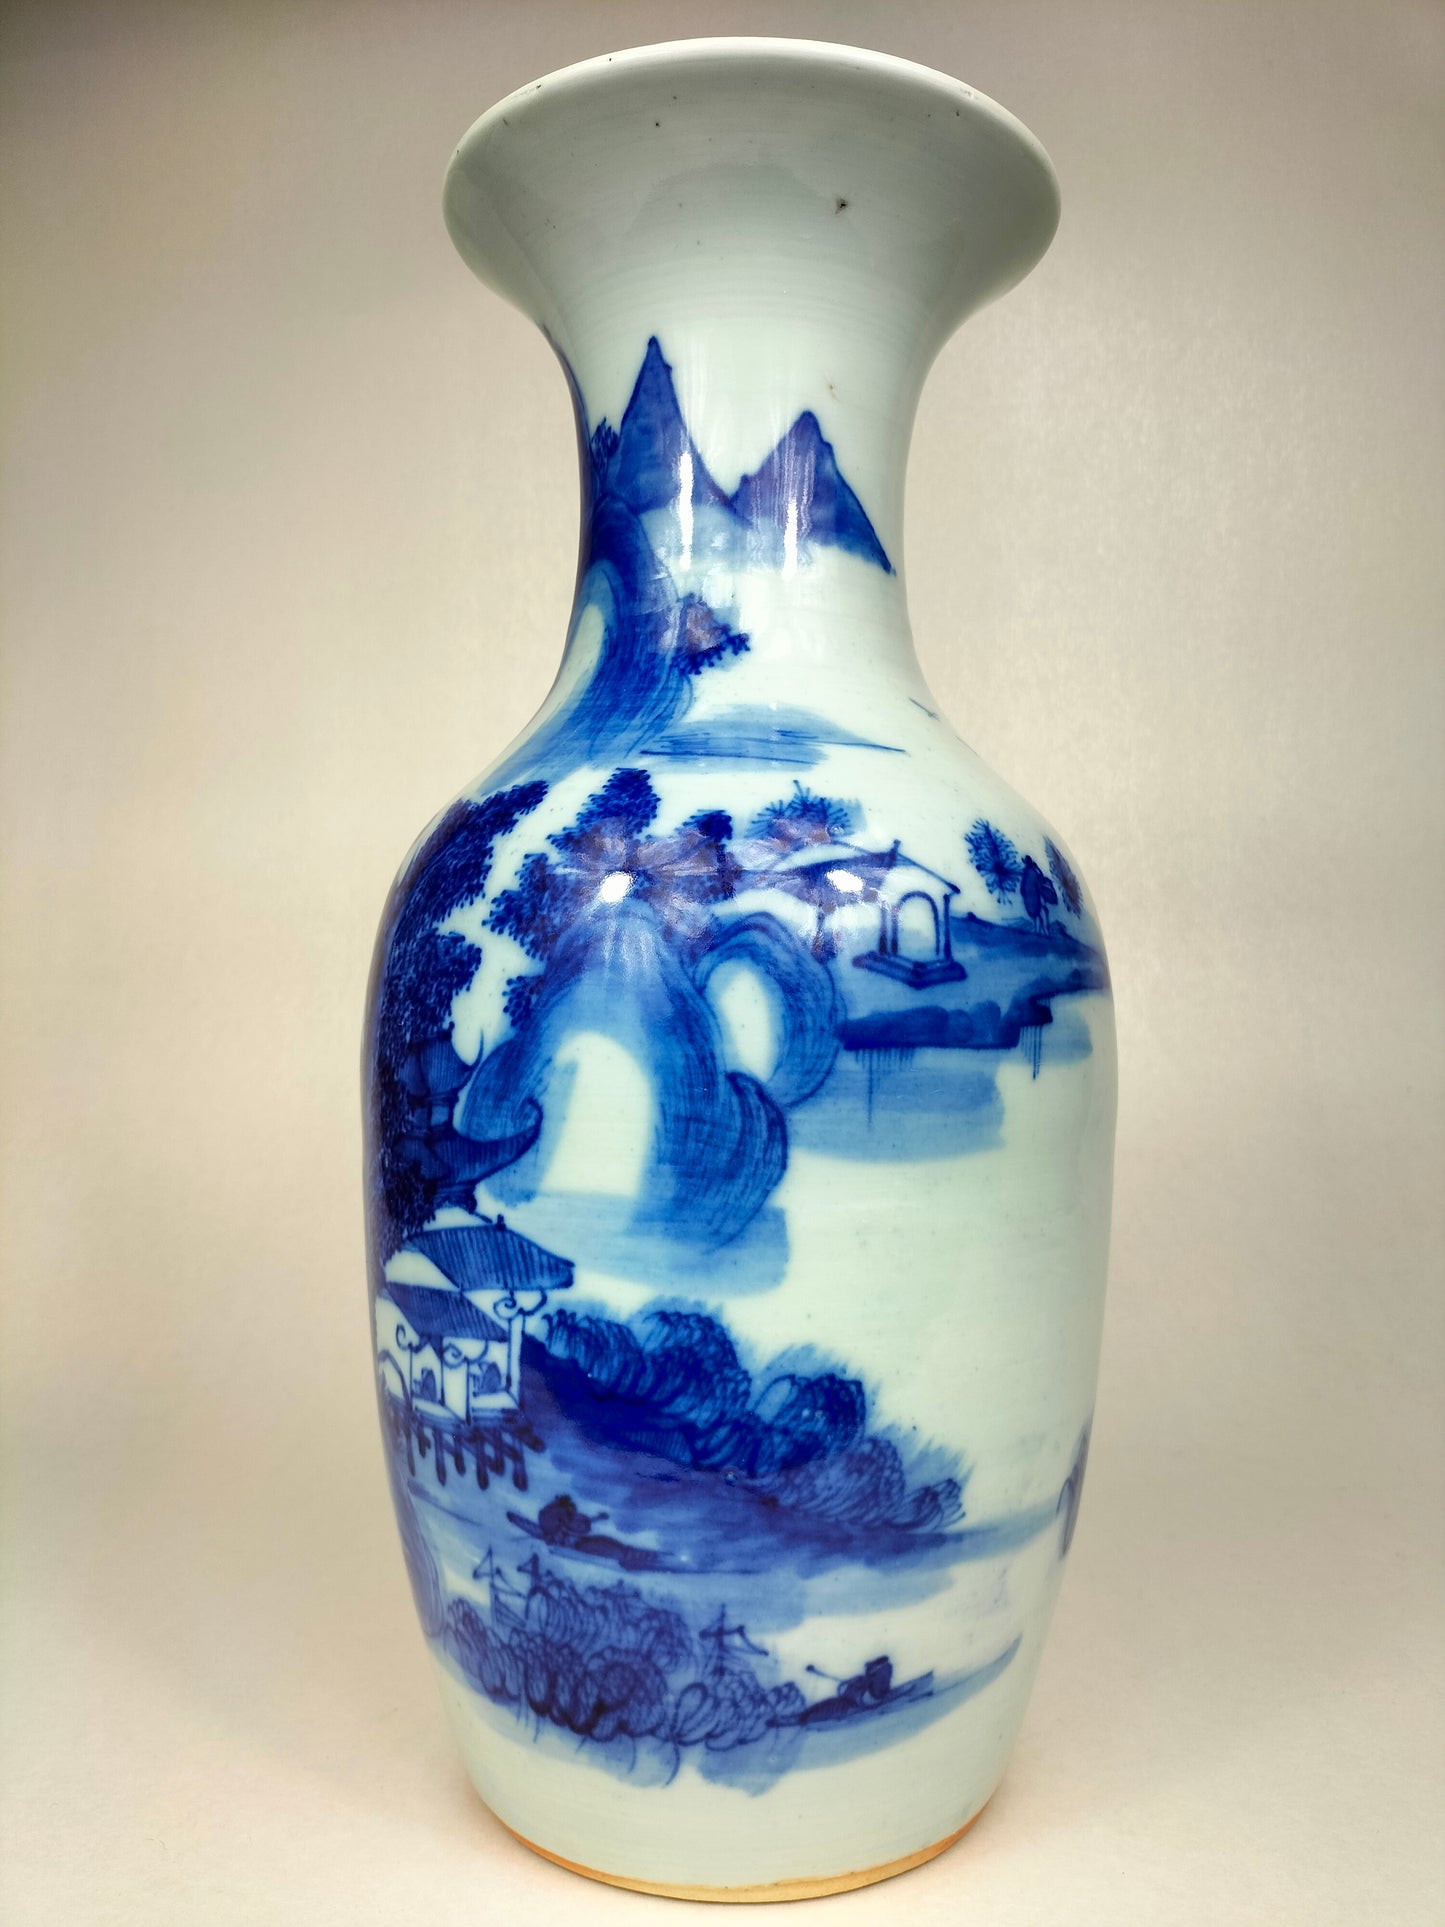 Antigo vaso chinês decorado com paisagem // Azul e branco - Dinastia Qing - século XIX